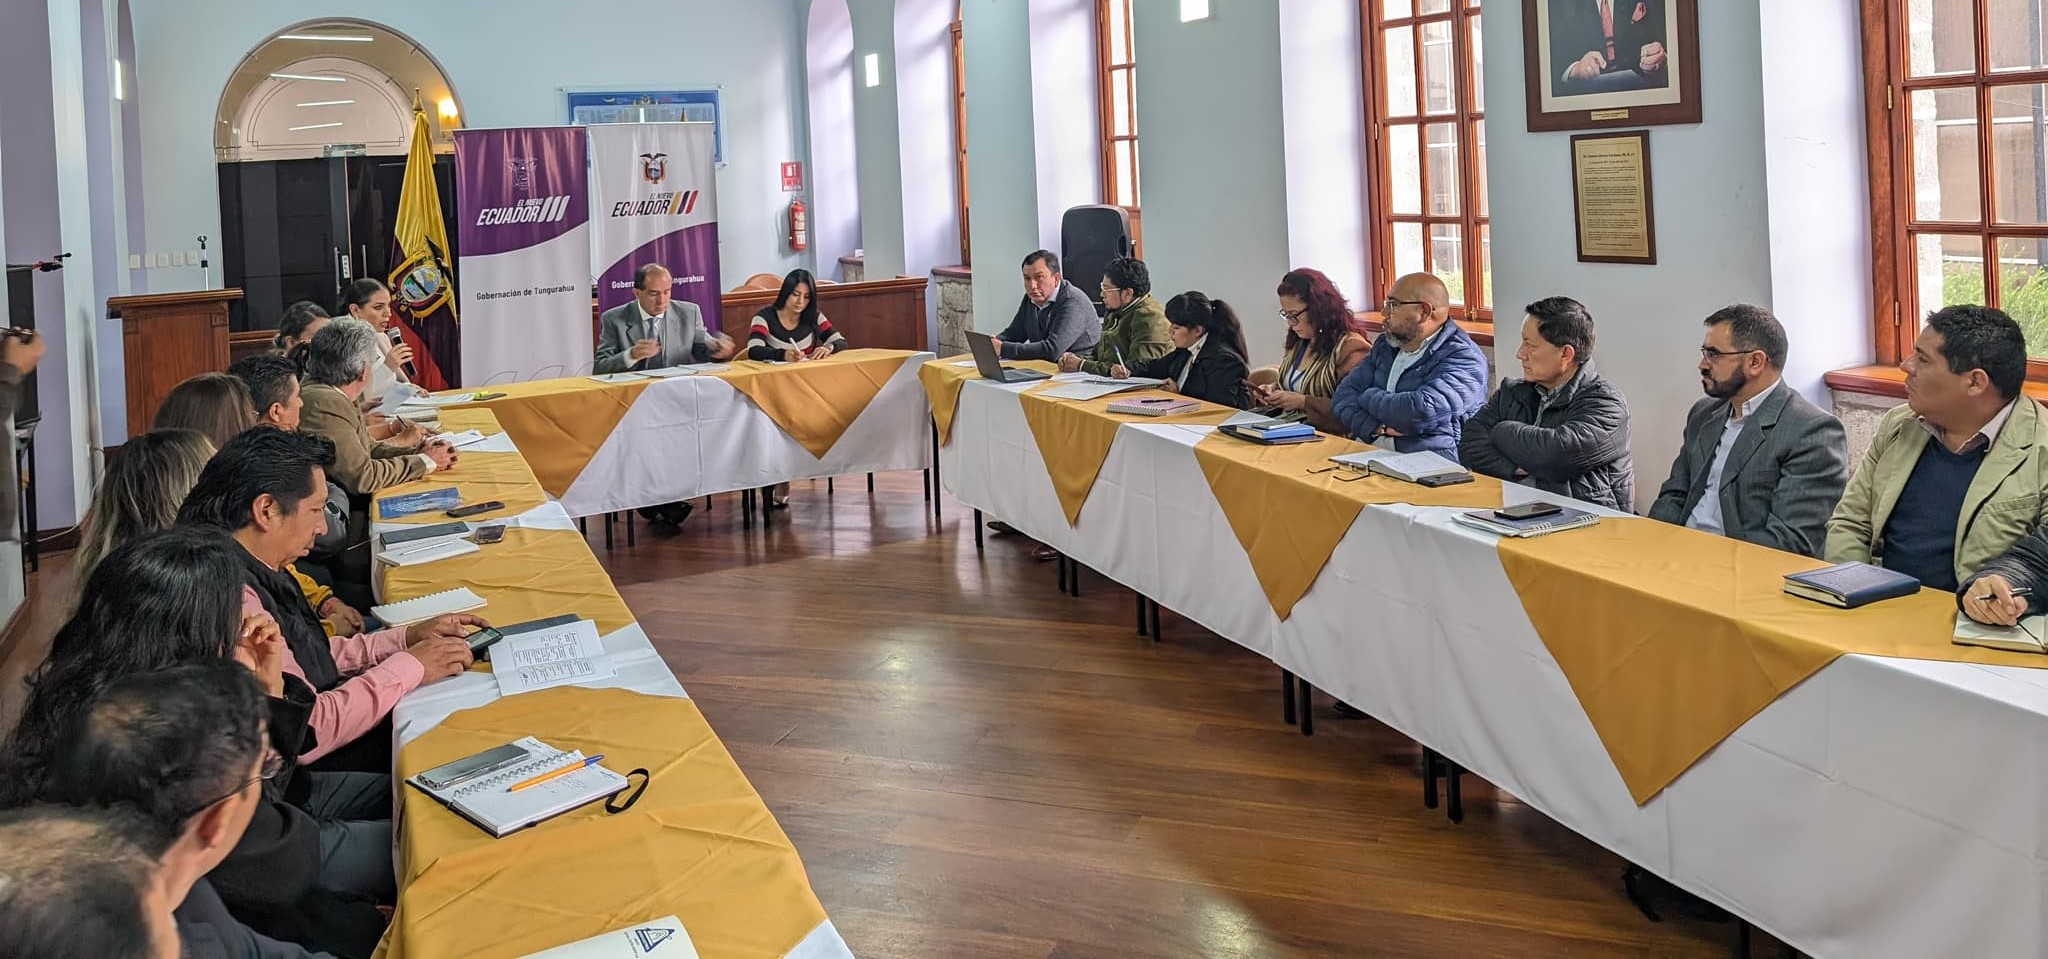 Santiago Vargas Gobernador de Tungurahua convocó y presidió una reunión de trabajo con todos los integrantes del Ejecutivo Desconcentrado de la provincia.